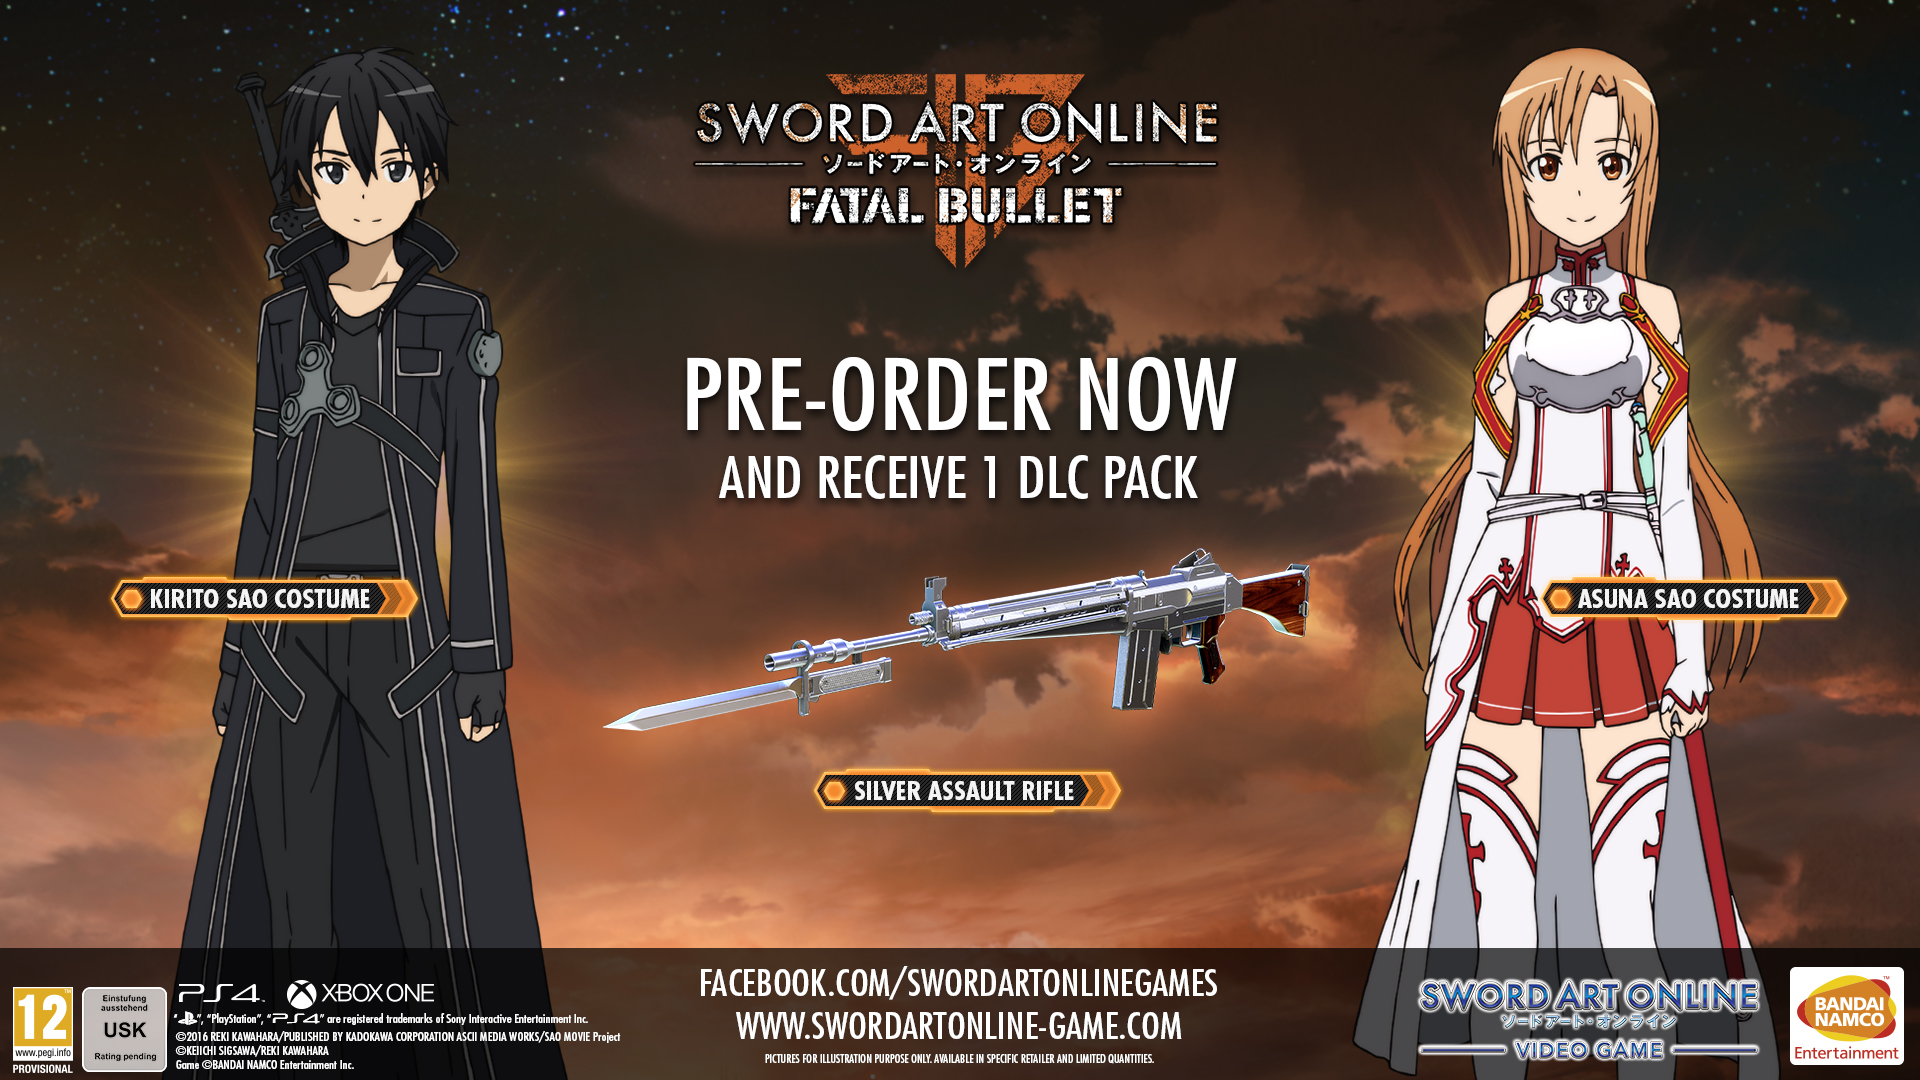 SWORD ART ONLINE: Fatal Bullet Steam Key for PC - Buy now